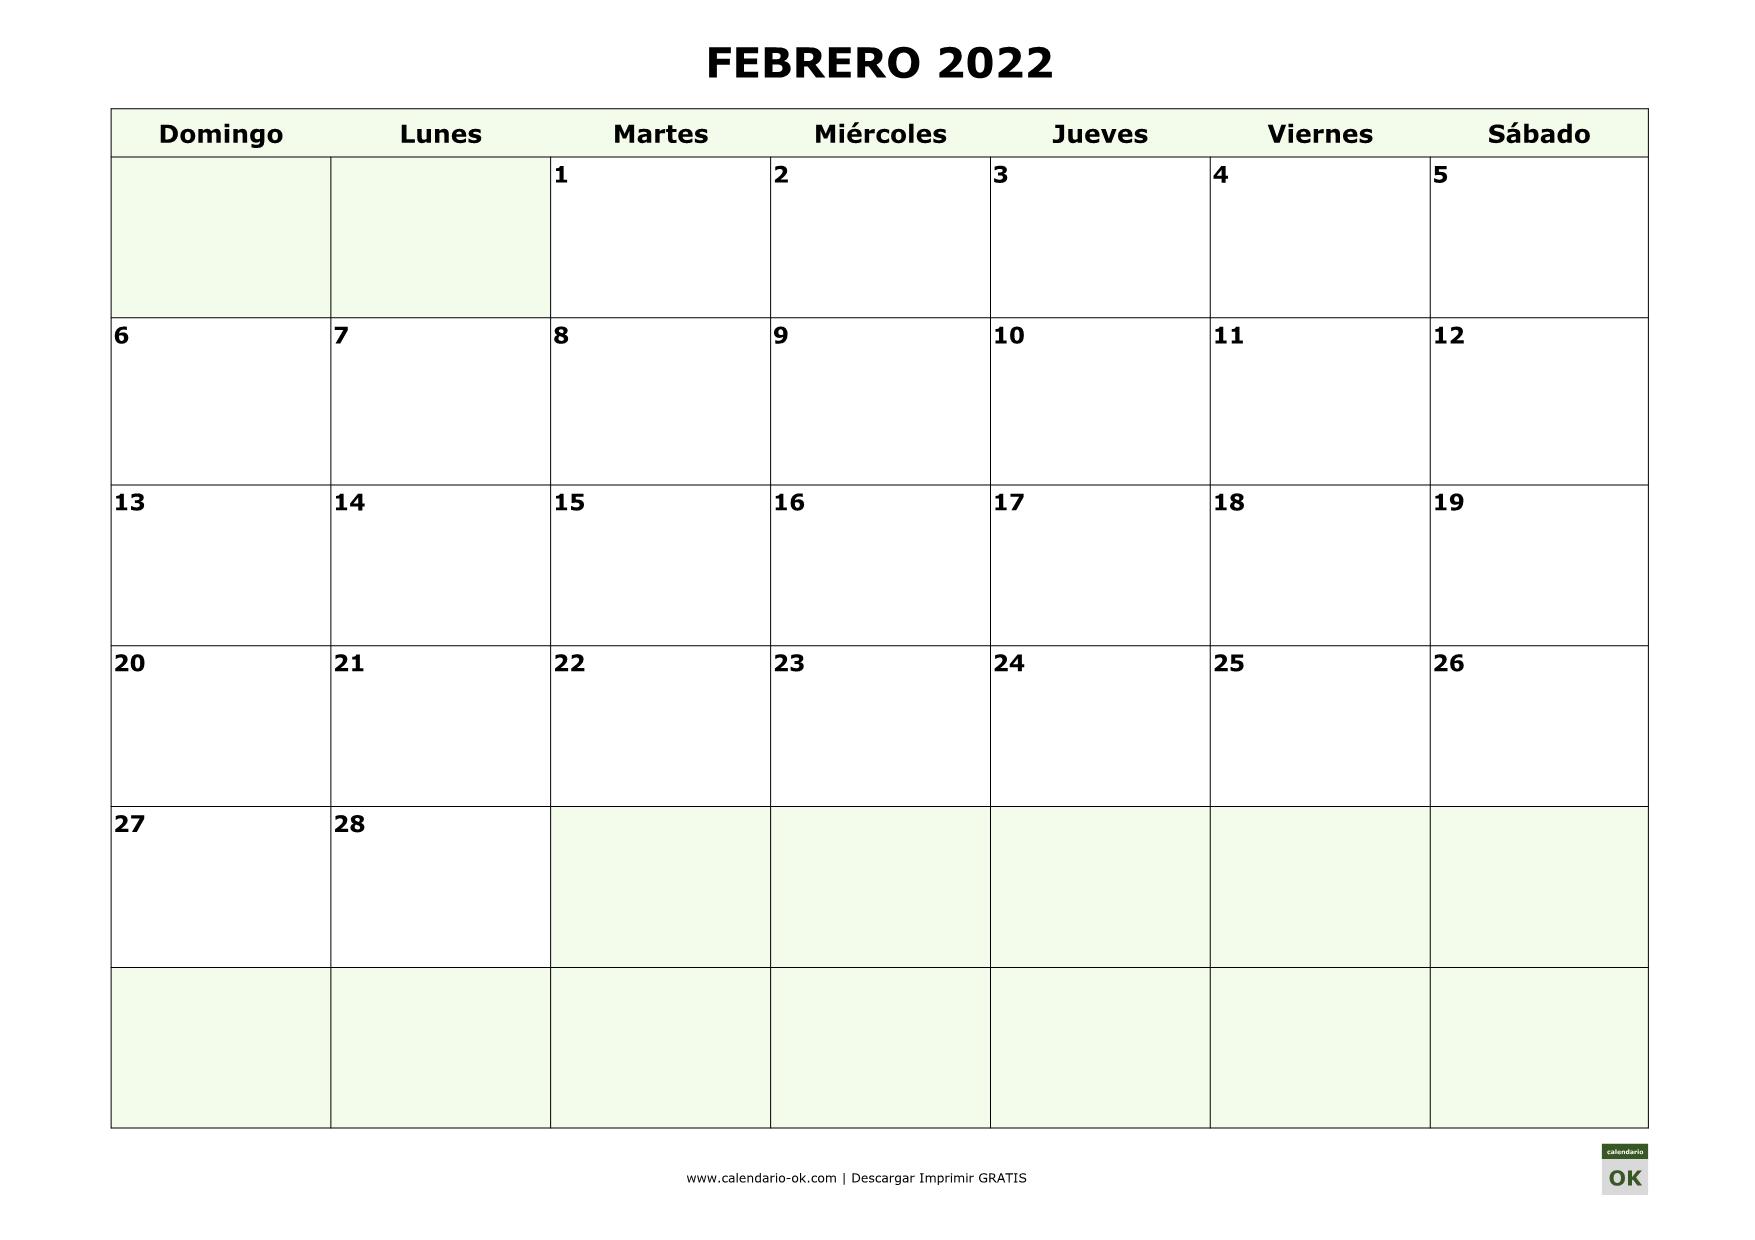 FEBRERO 2022 empieza por DOMINGO